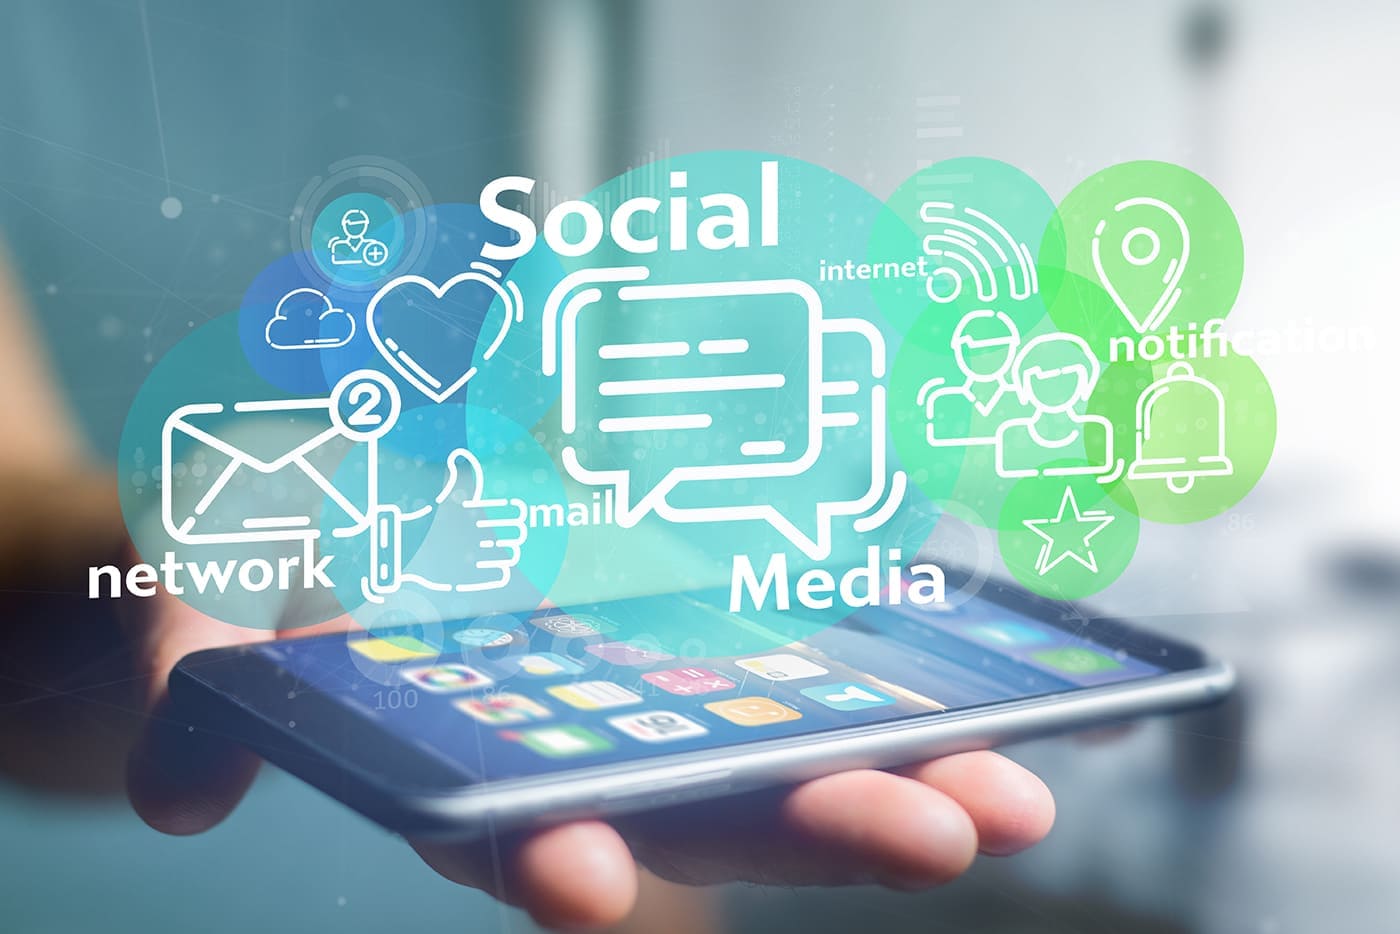 Social Media roles in Digital Marketing